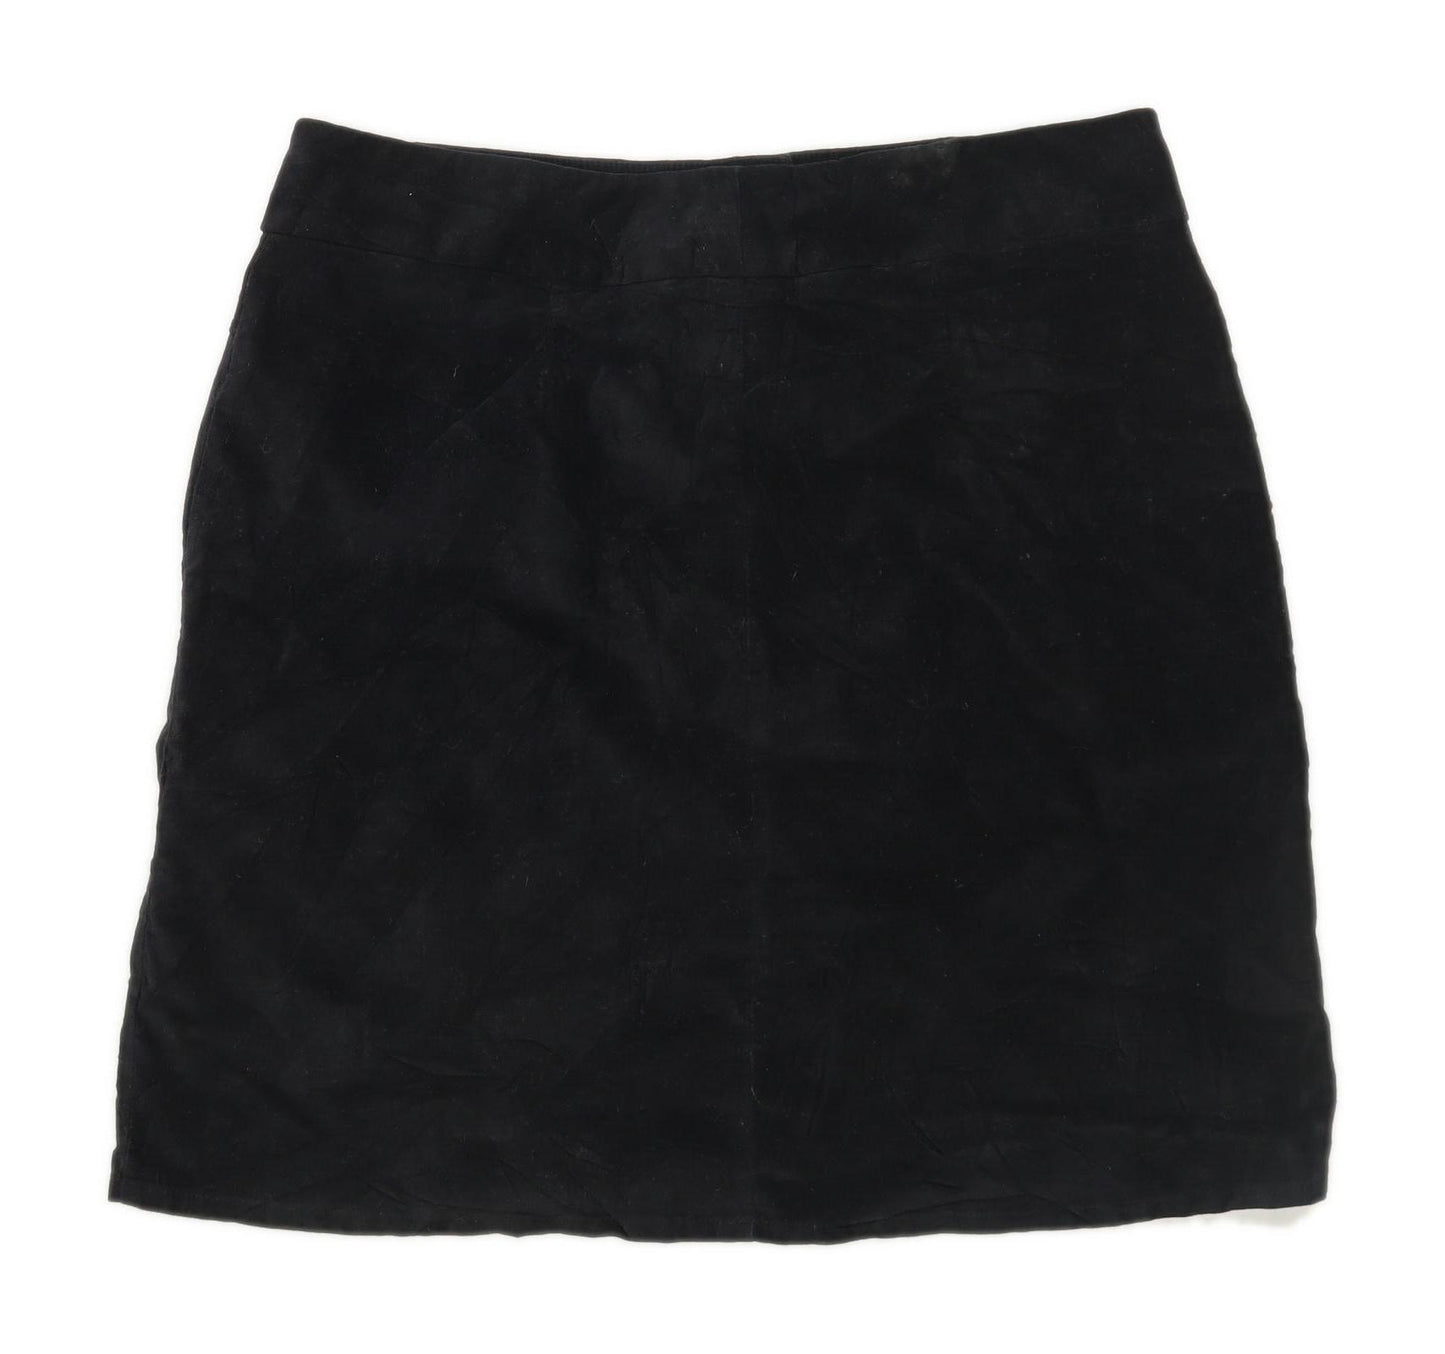 Marks & Spencer Womens Size 14 Cotton Blend Black Skirt (Regular)